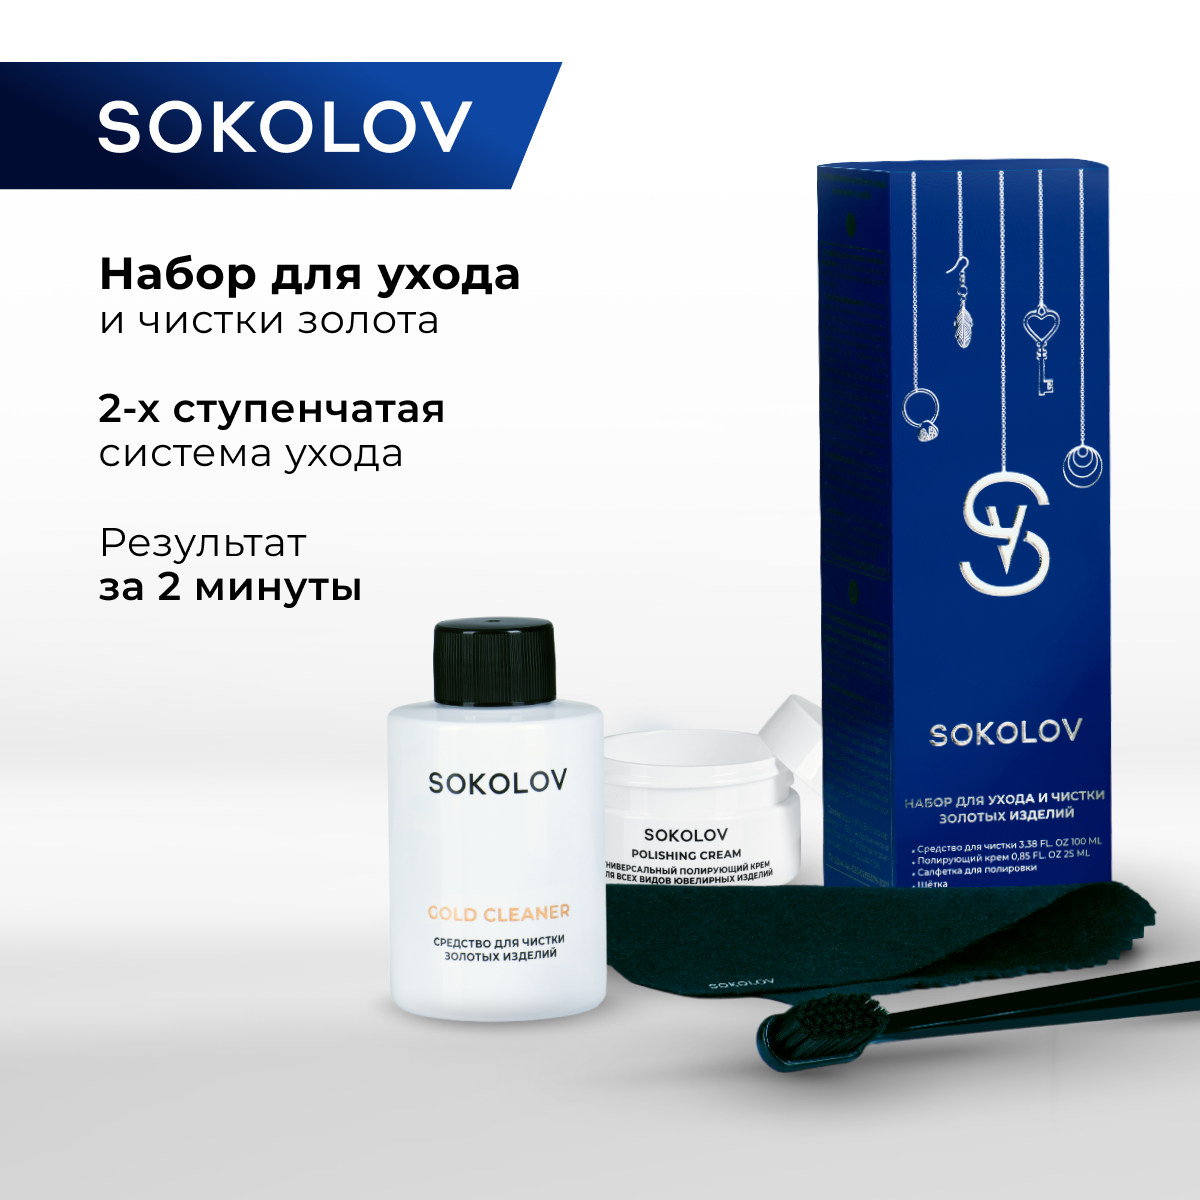 Набор для ухода и чистки золотых SOKOLOV изделий 44043111